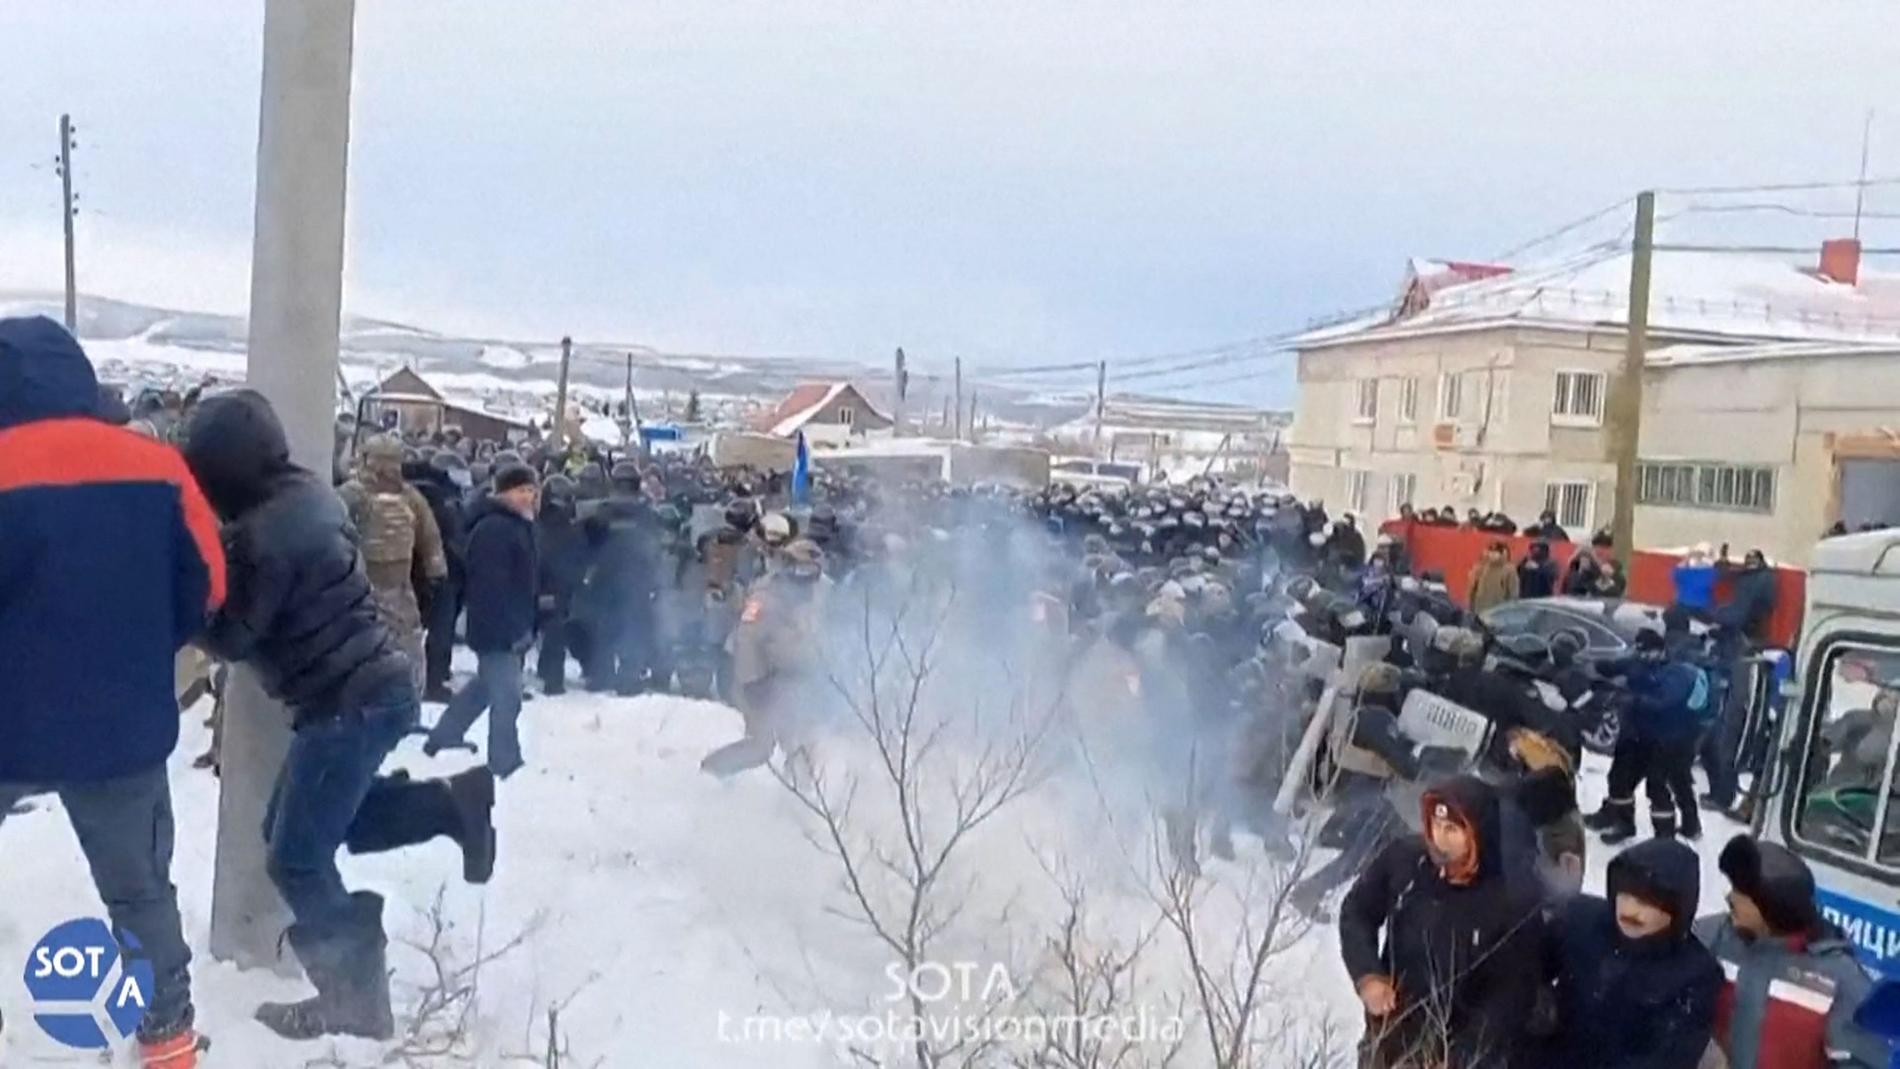 Polis använder tårgas för att skingra demonstranter i  Bashkortostan-regionen. Bilden är från onsdag 17 januari. 